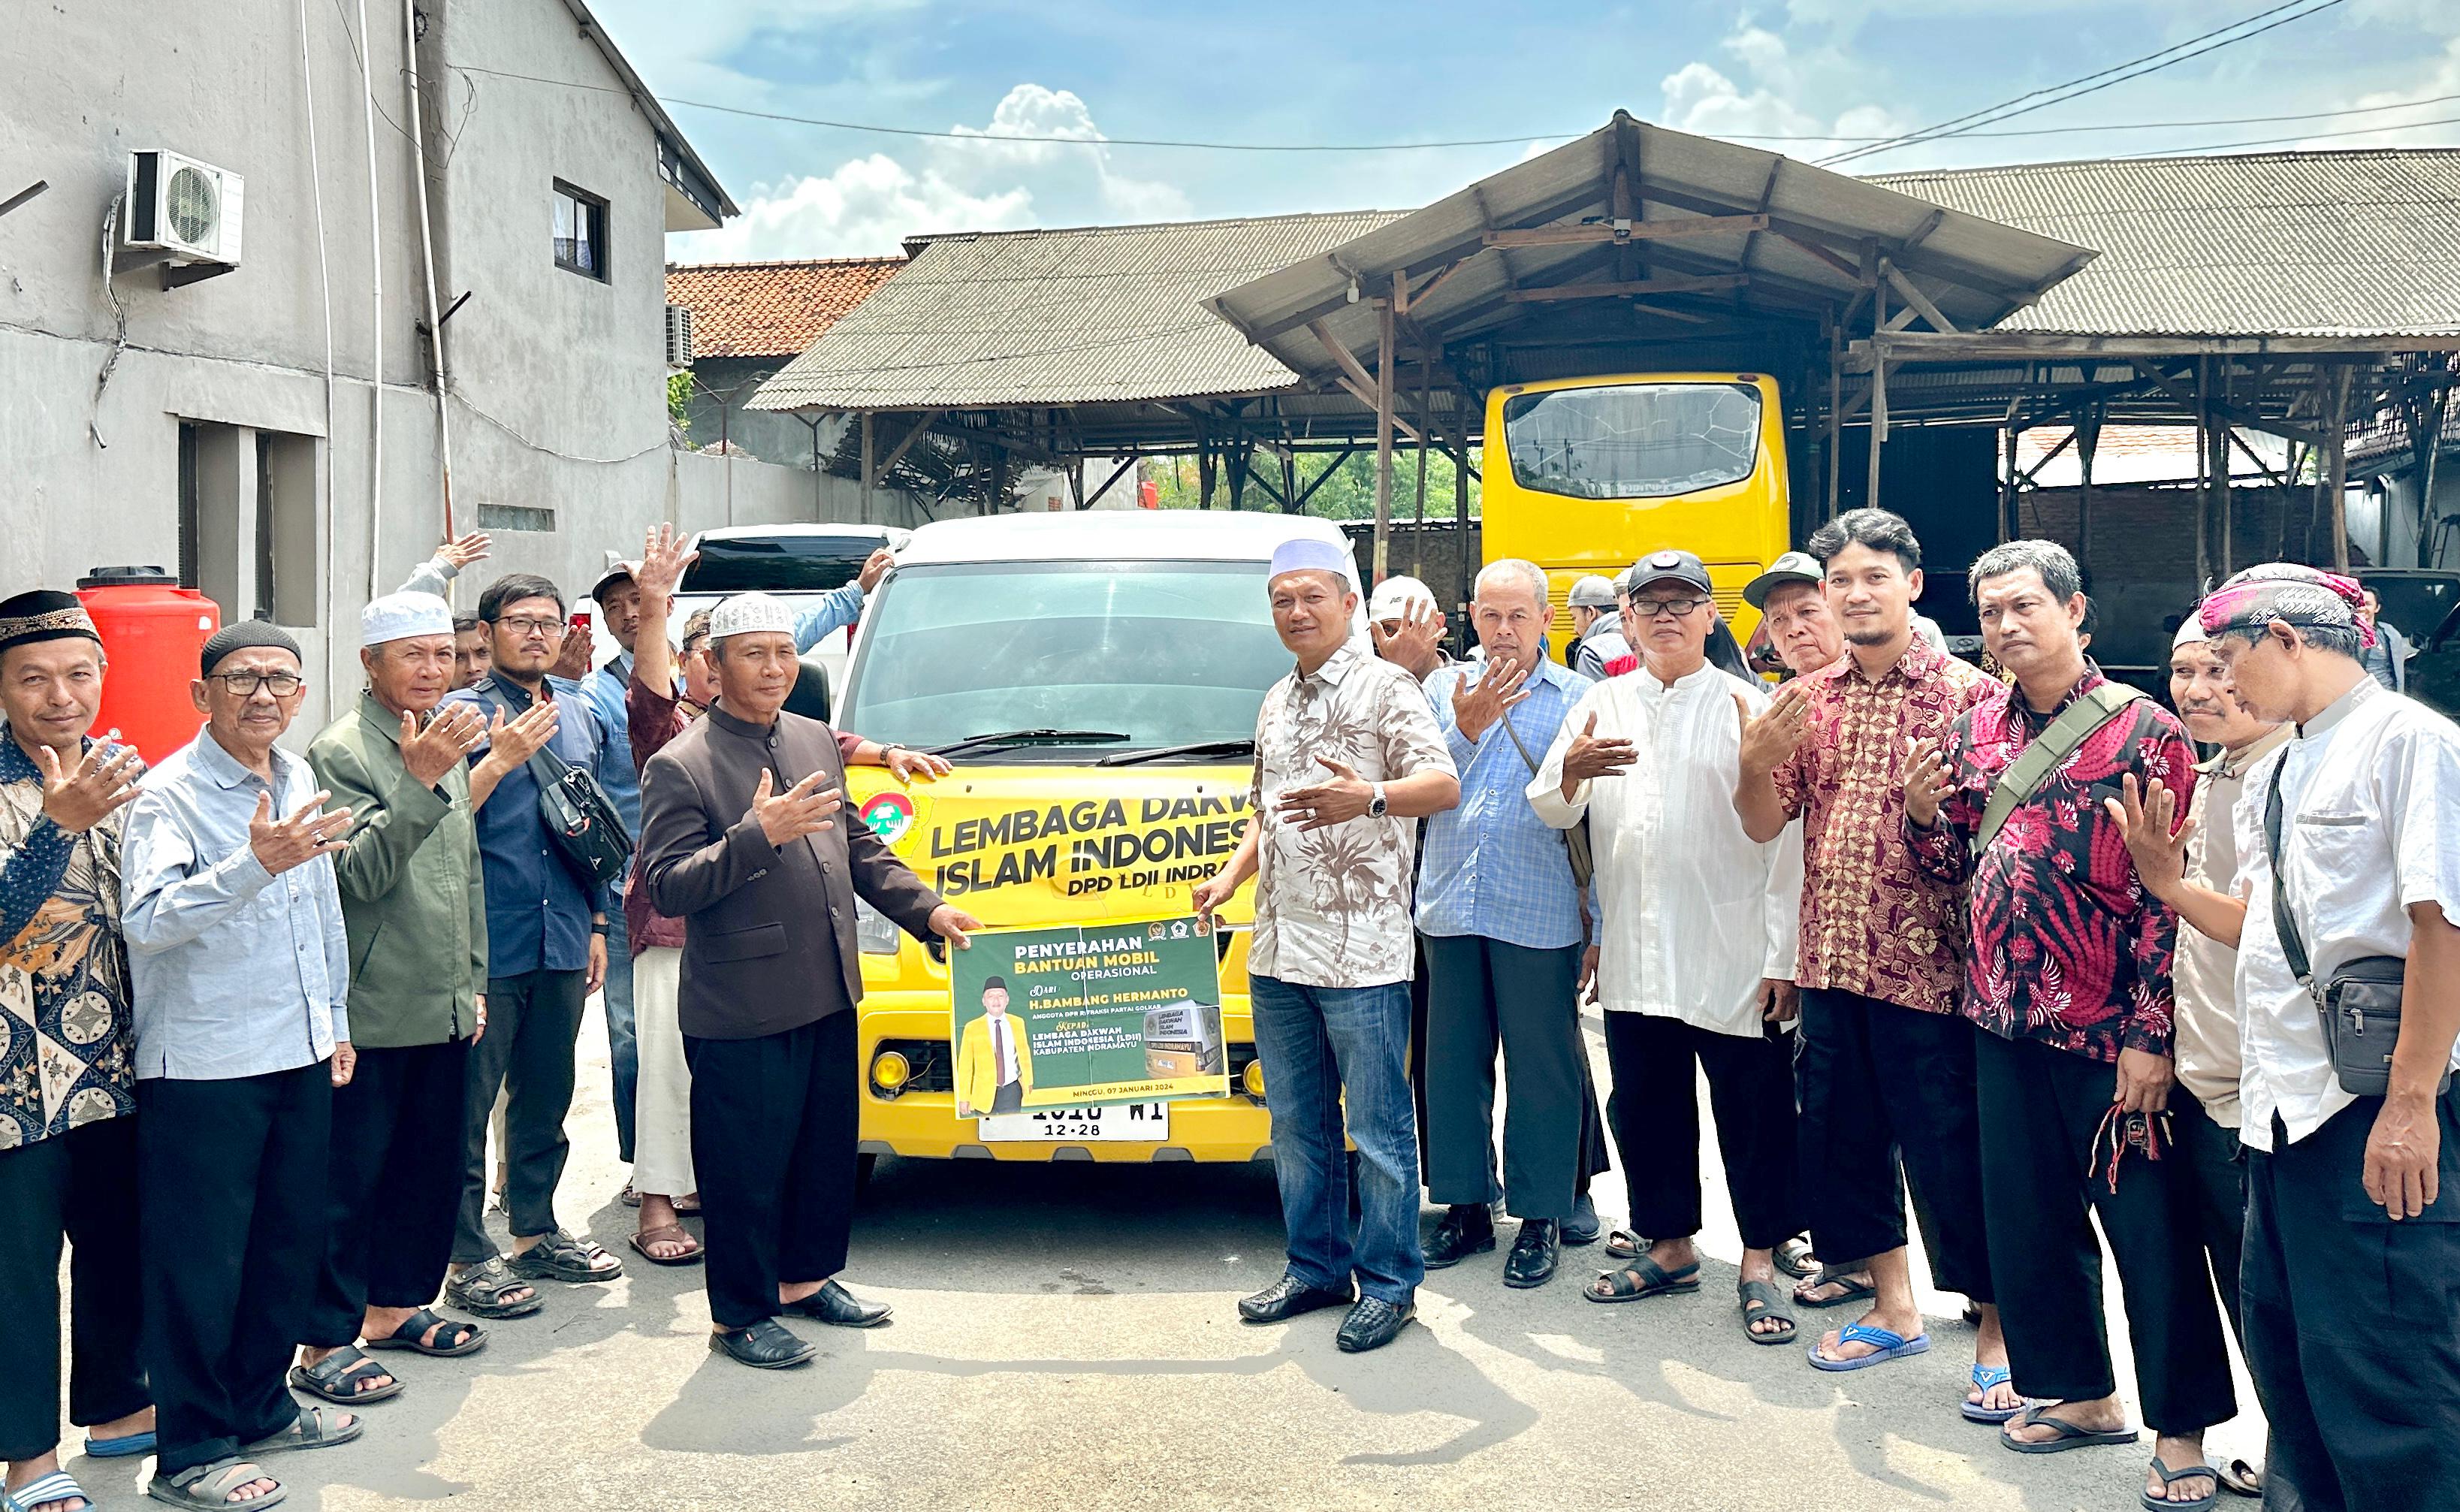 H.Bambang Hermanto Bantu 1 Unit Mobil Operasional Lembaga Dakwah Islam Indonesia (LDII) 